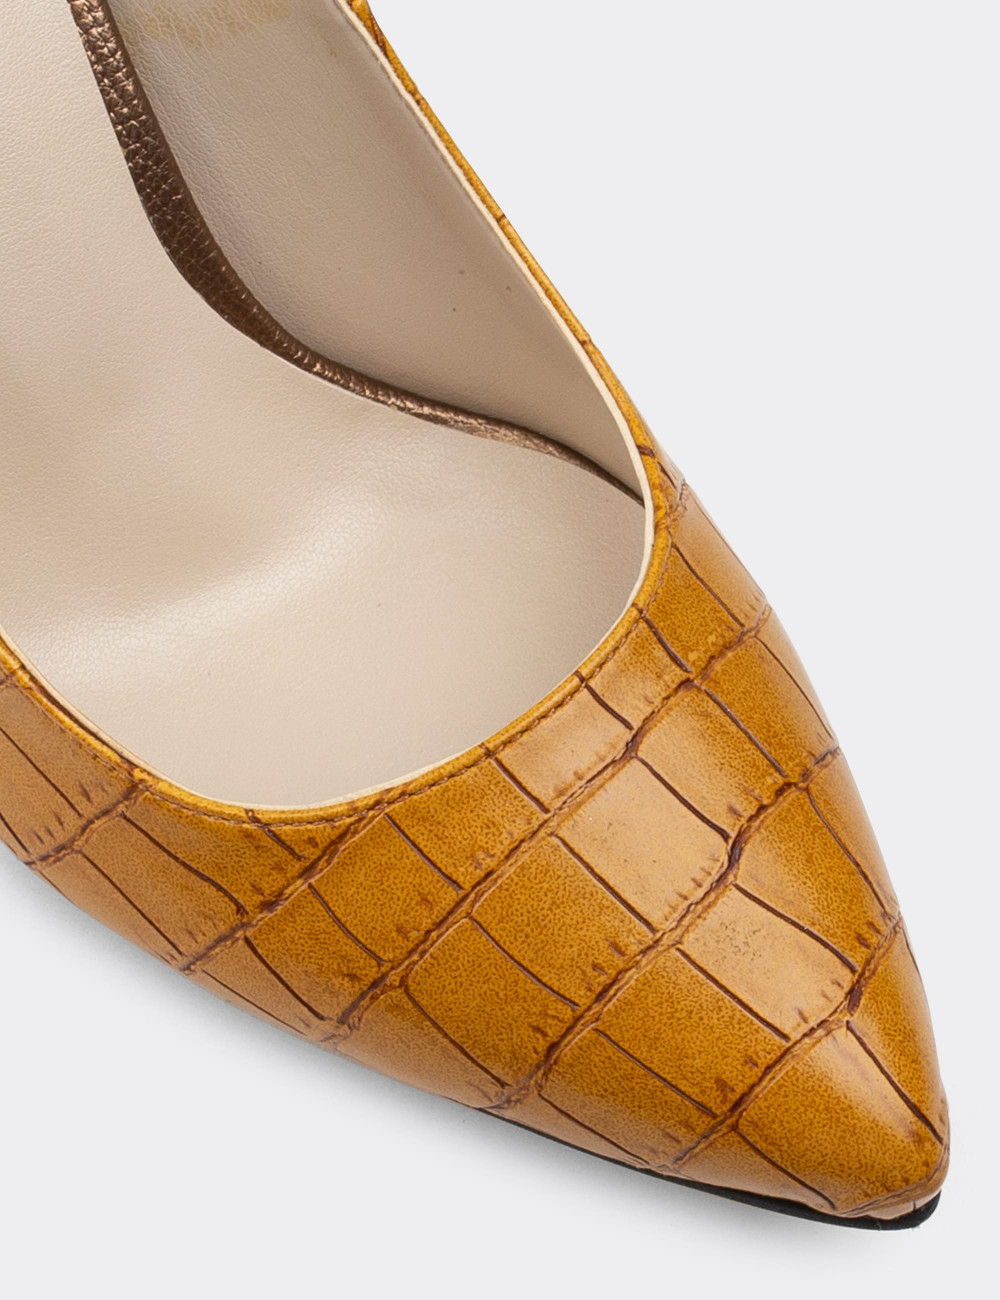 Sarı Kroko Stiletto Kadın Topuklu Ayakkabı - 02029ZSRIM05